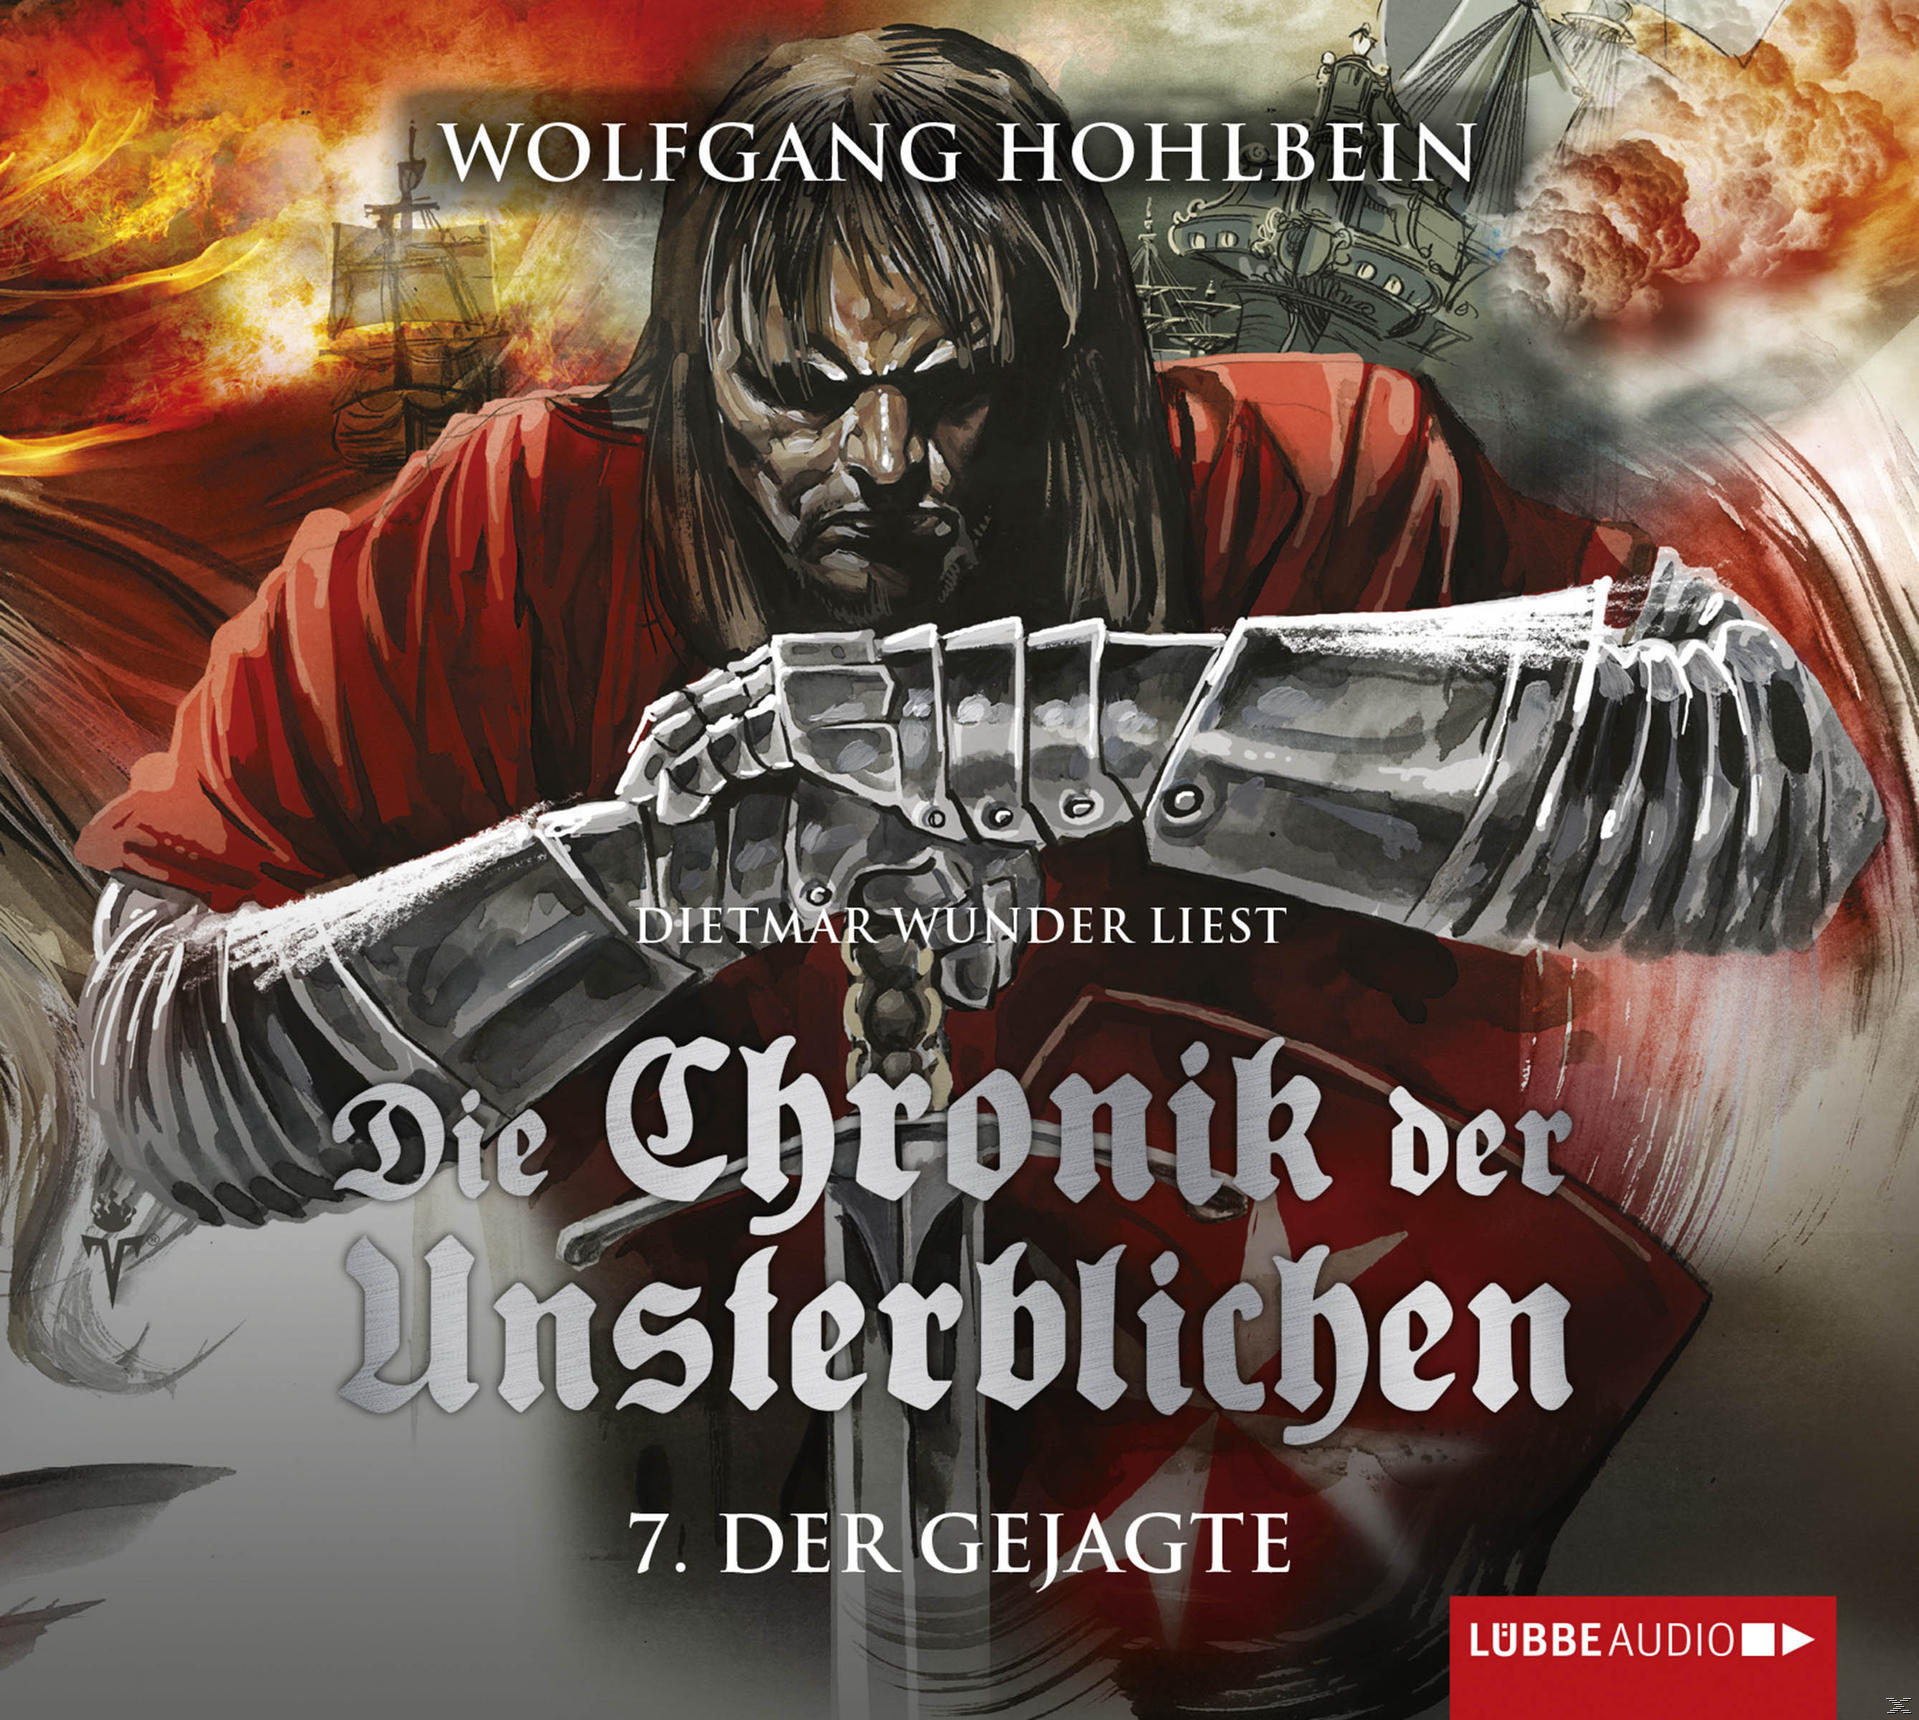 Teil Unsterblichen der 7: - Gejagte Hohlbein - Chronik - Die Der (CD) Wolfgang